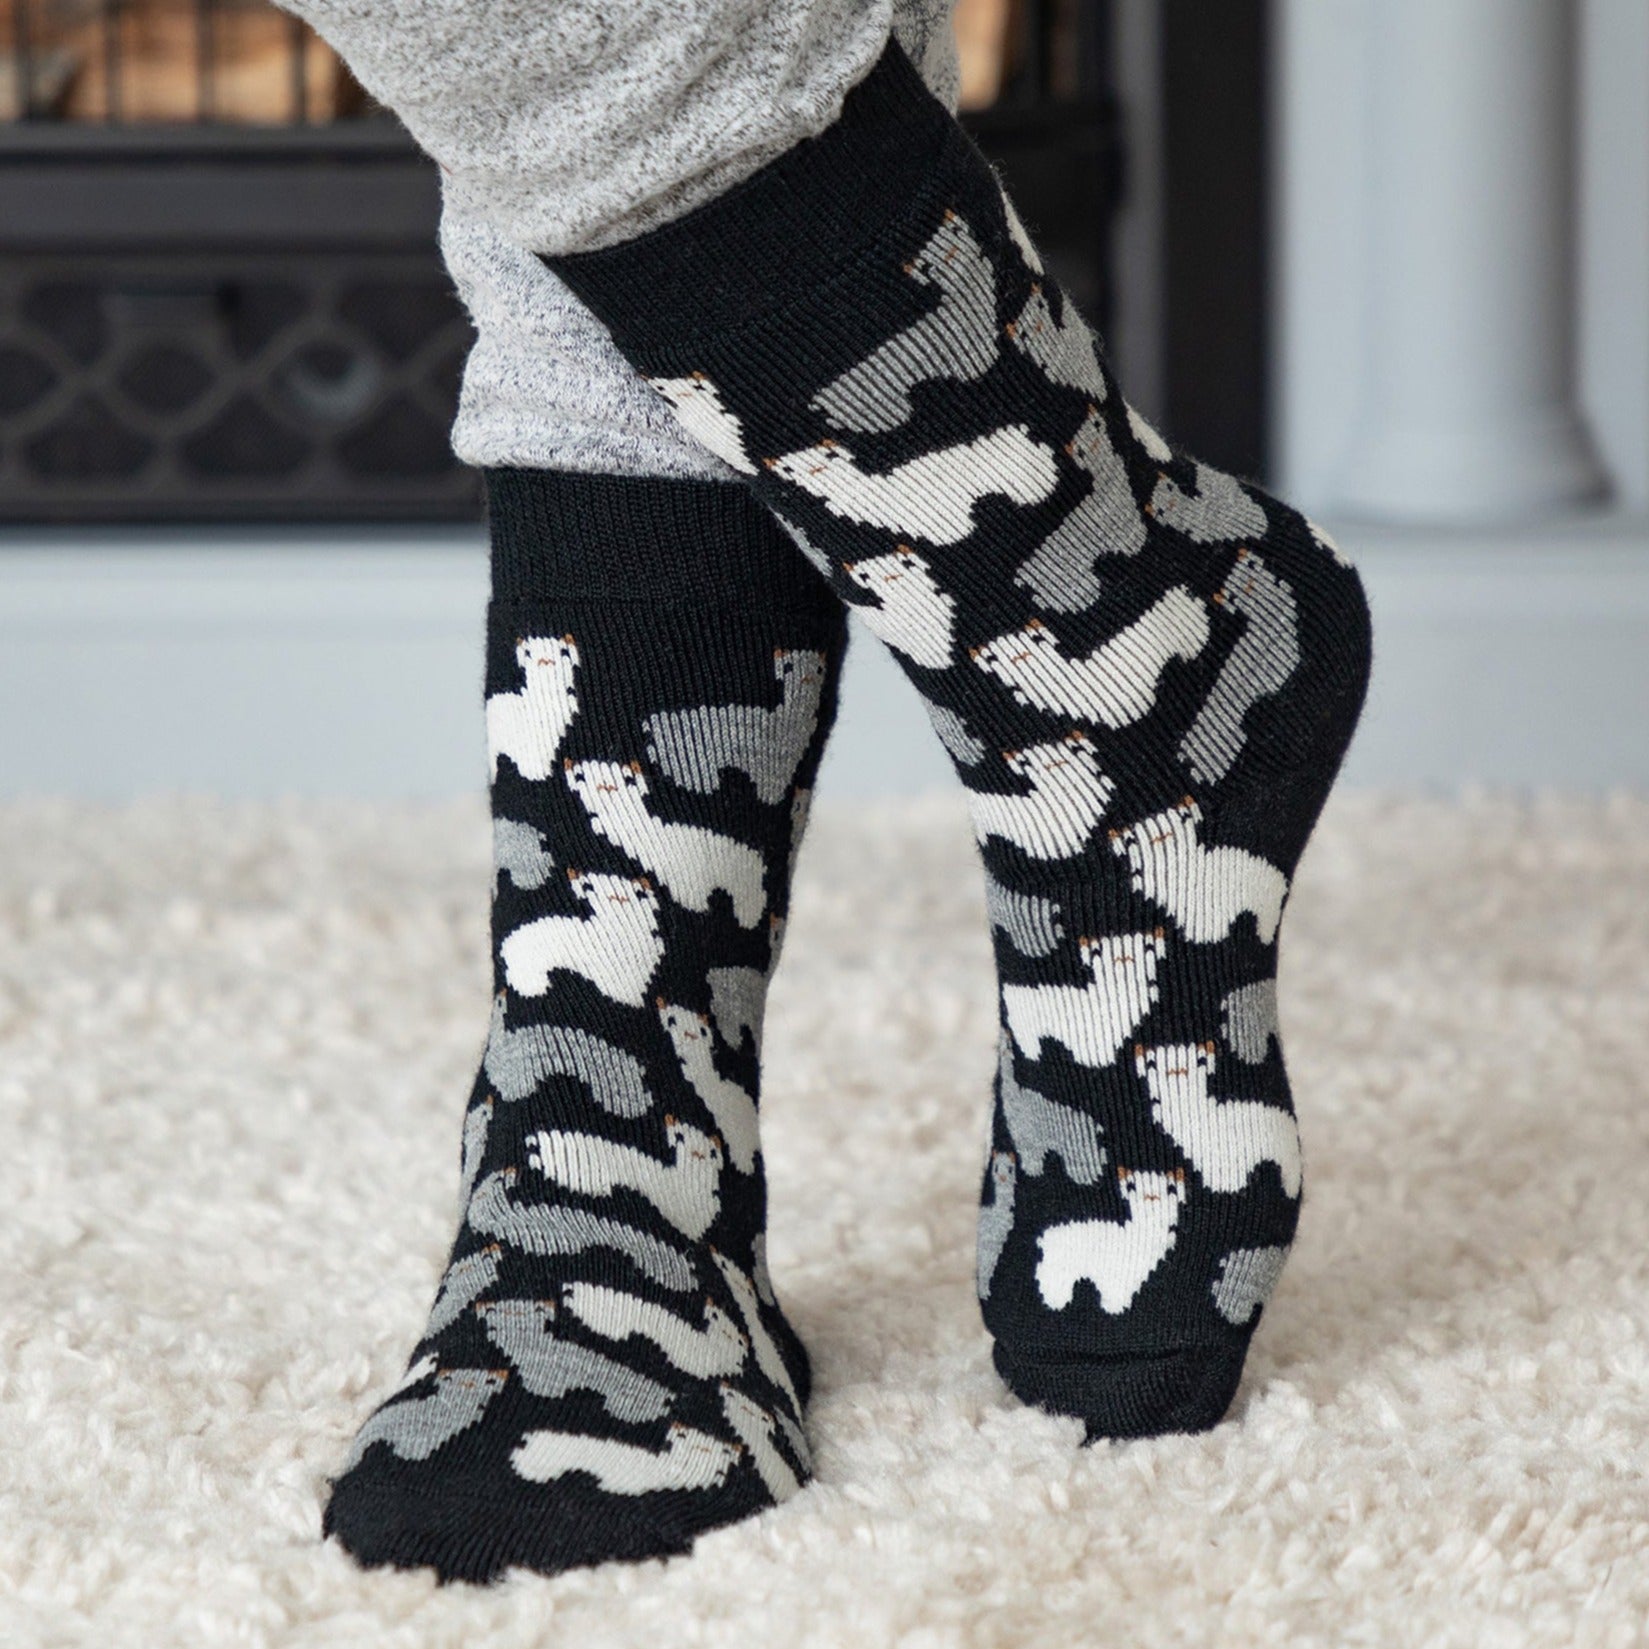 Warm Alpaca Love Socks - Black